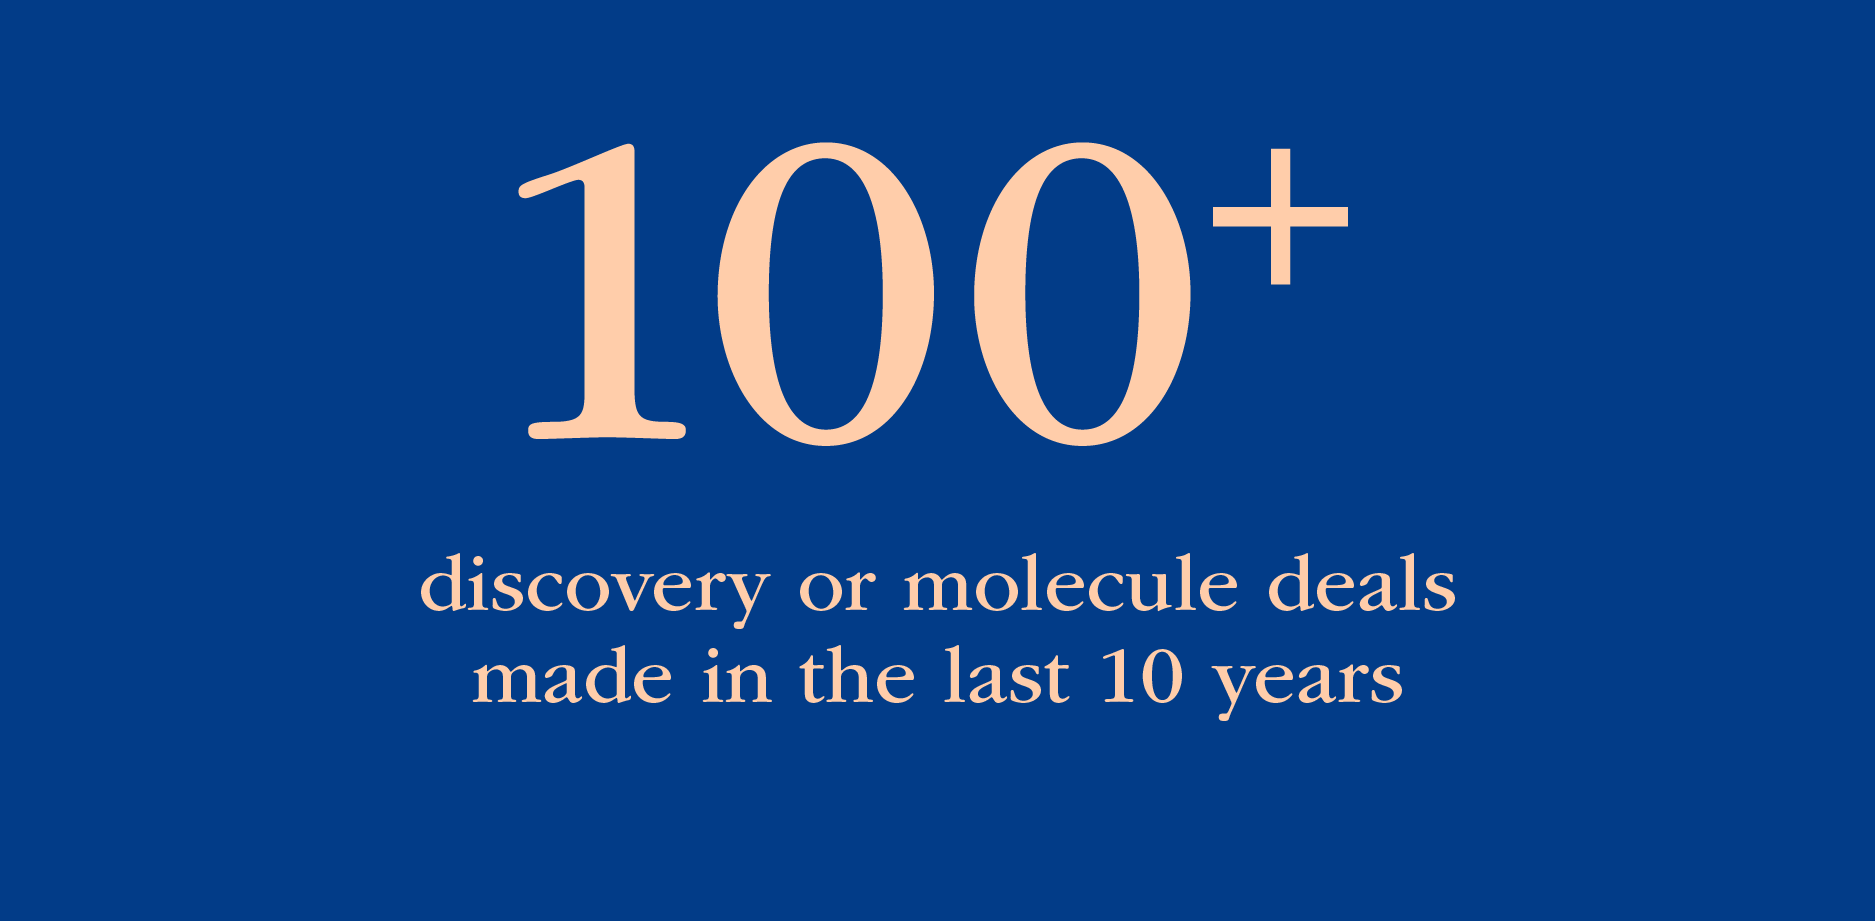 过去10年中完成了100多项发现或分子交易